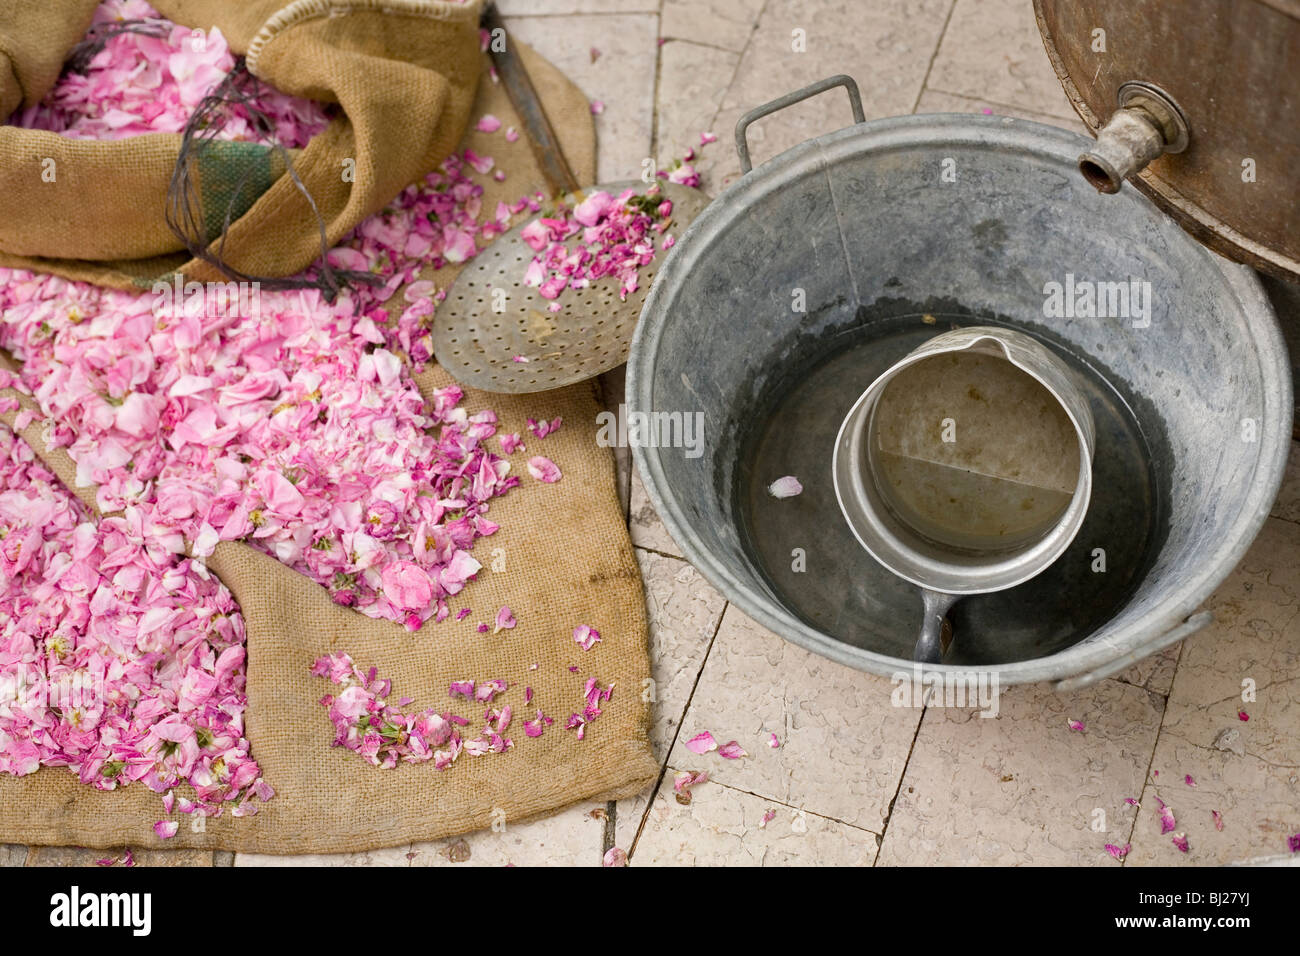 Rosenblüten und traditionelle Ausrüstung zum Destillieren Rosenwasser,  Frankreich, Mai 2009 Stockfotografie - Alamy